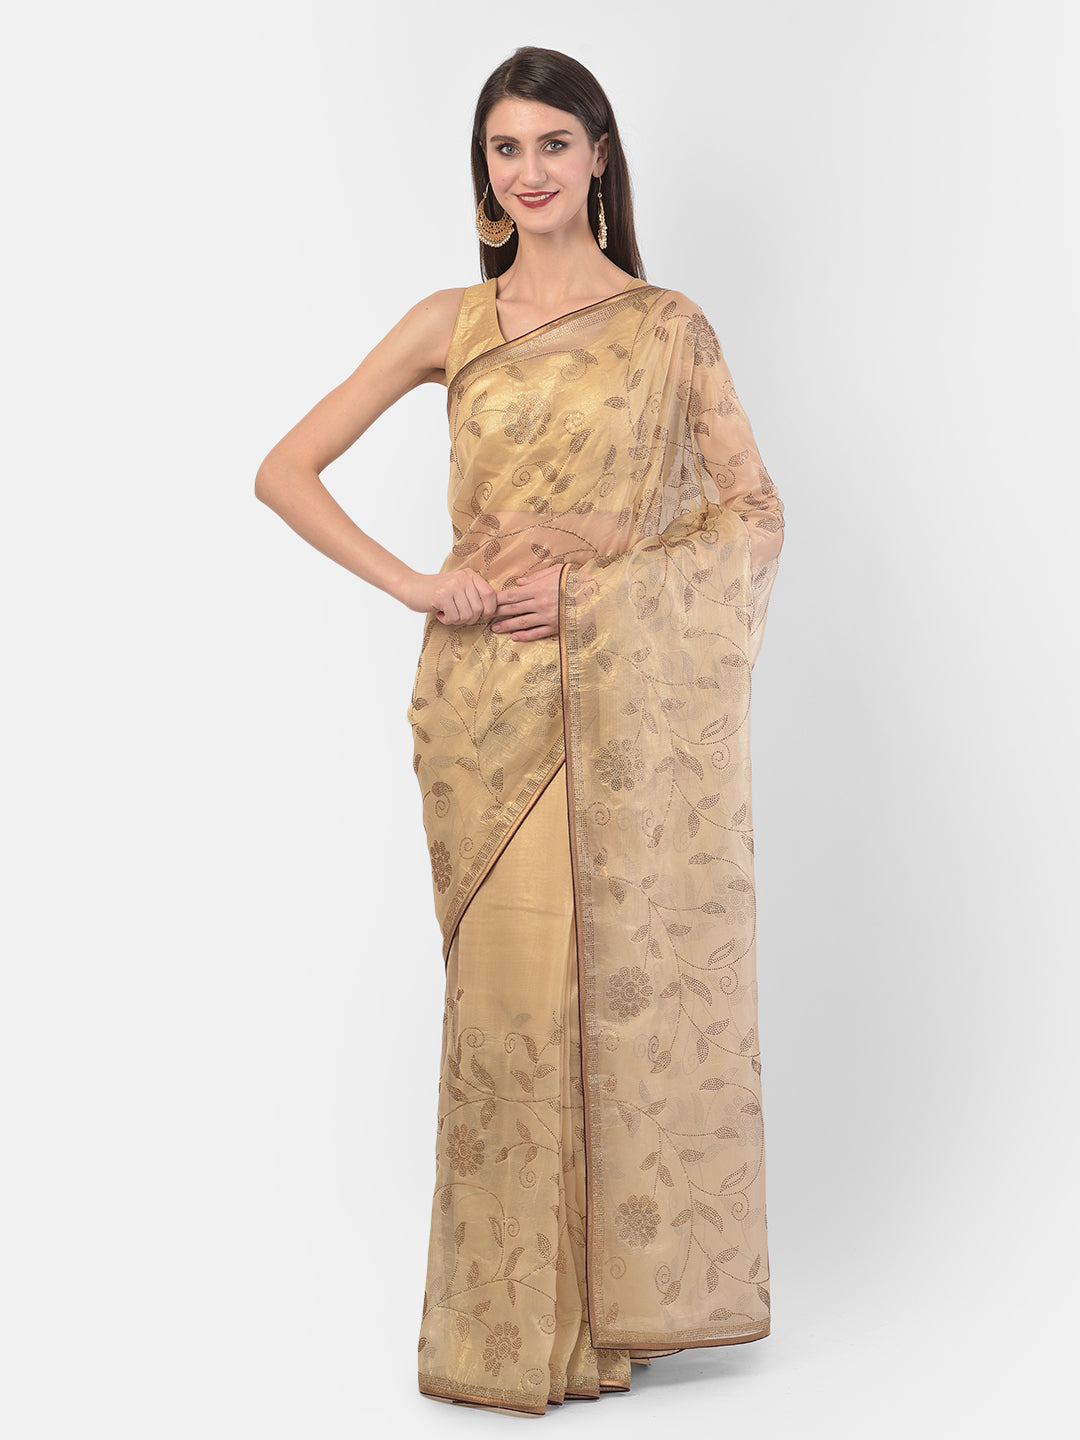 Neerus Gold Color Tissue Fabric Saree.